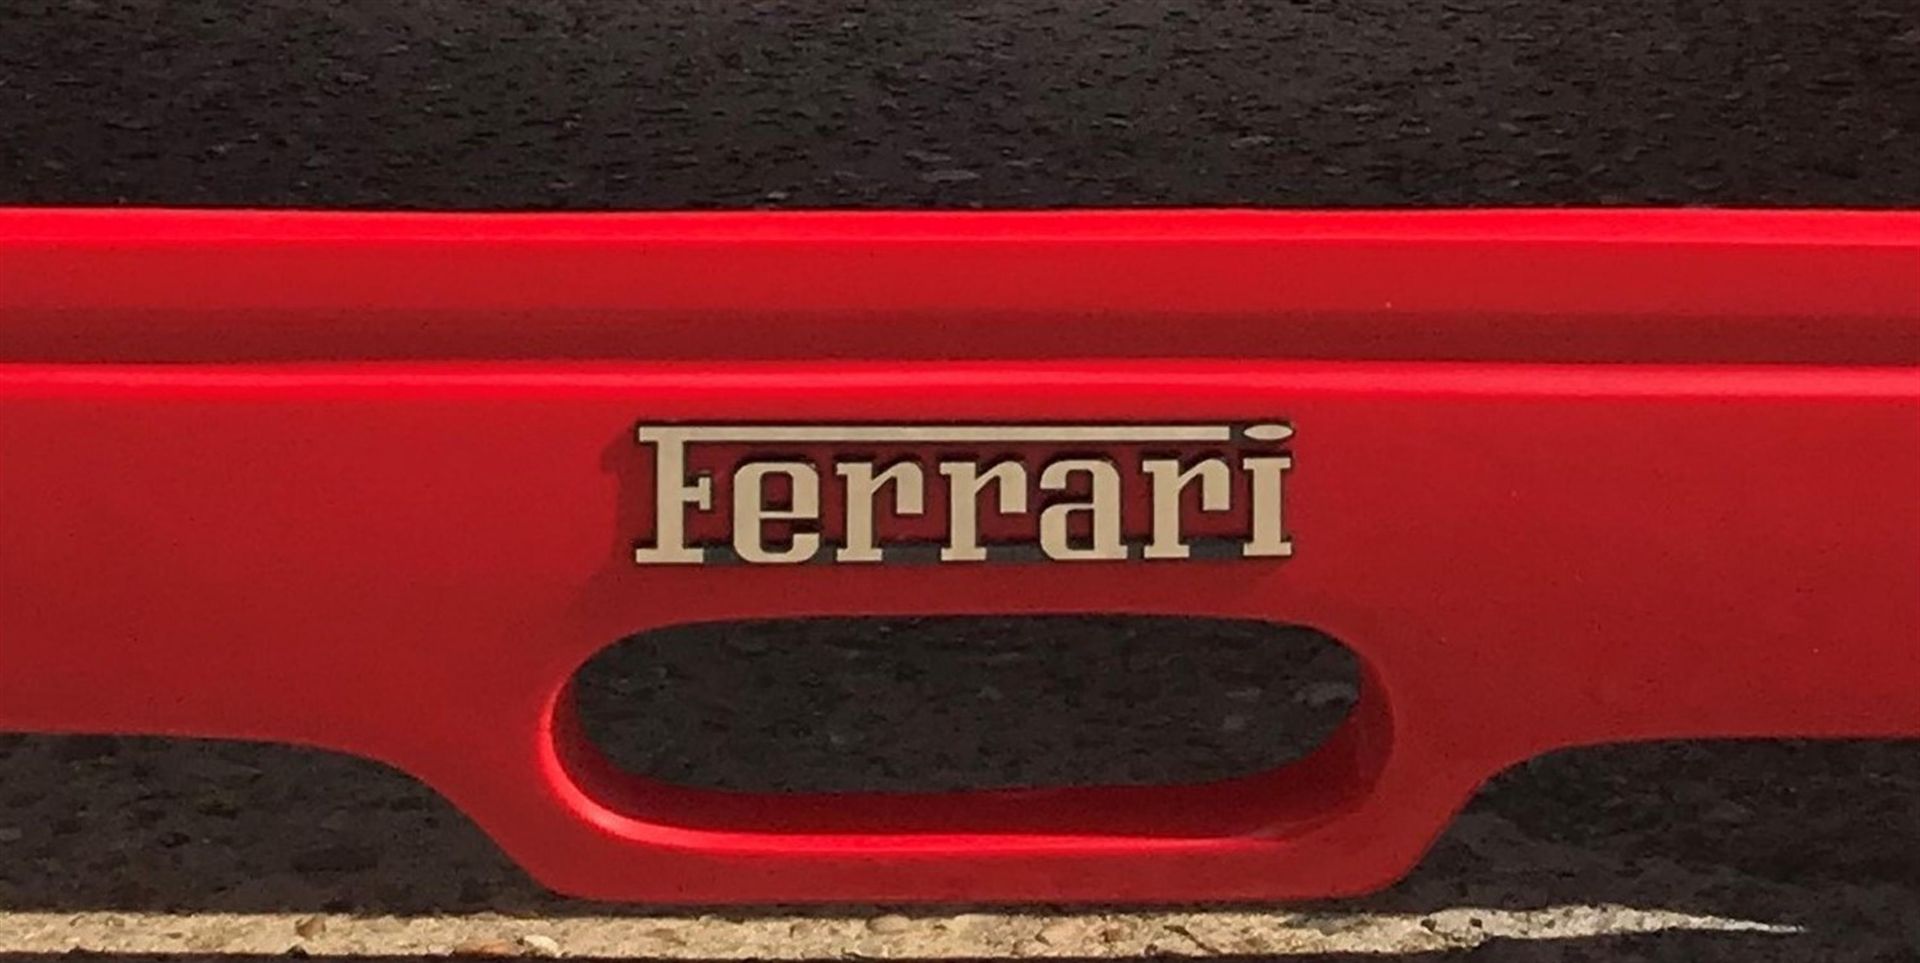 1/3 Scale 'Ferrari F40' Glassfibre Display Model - Image 6 of 8